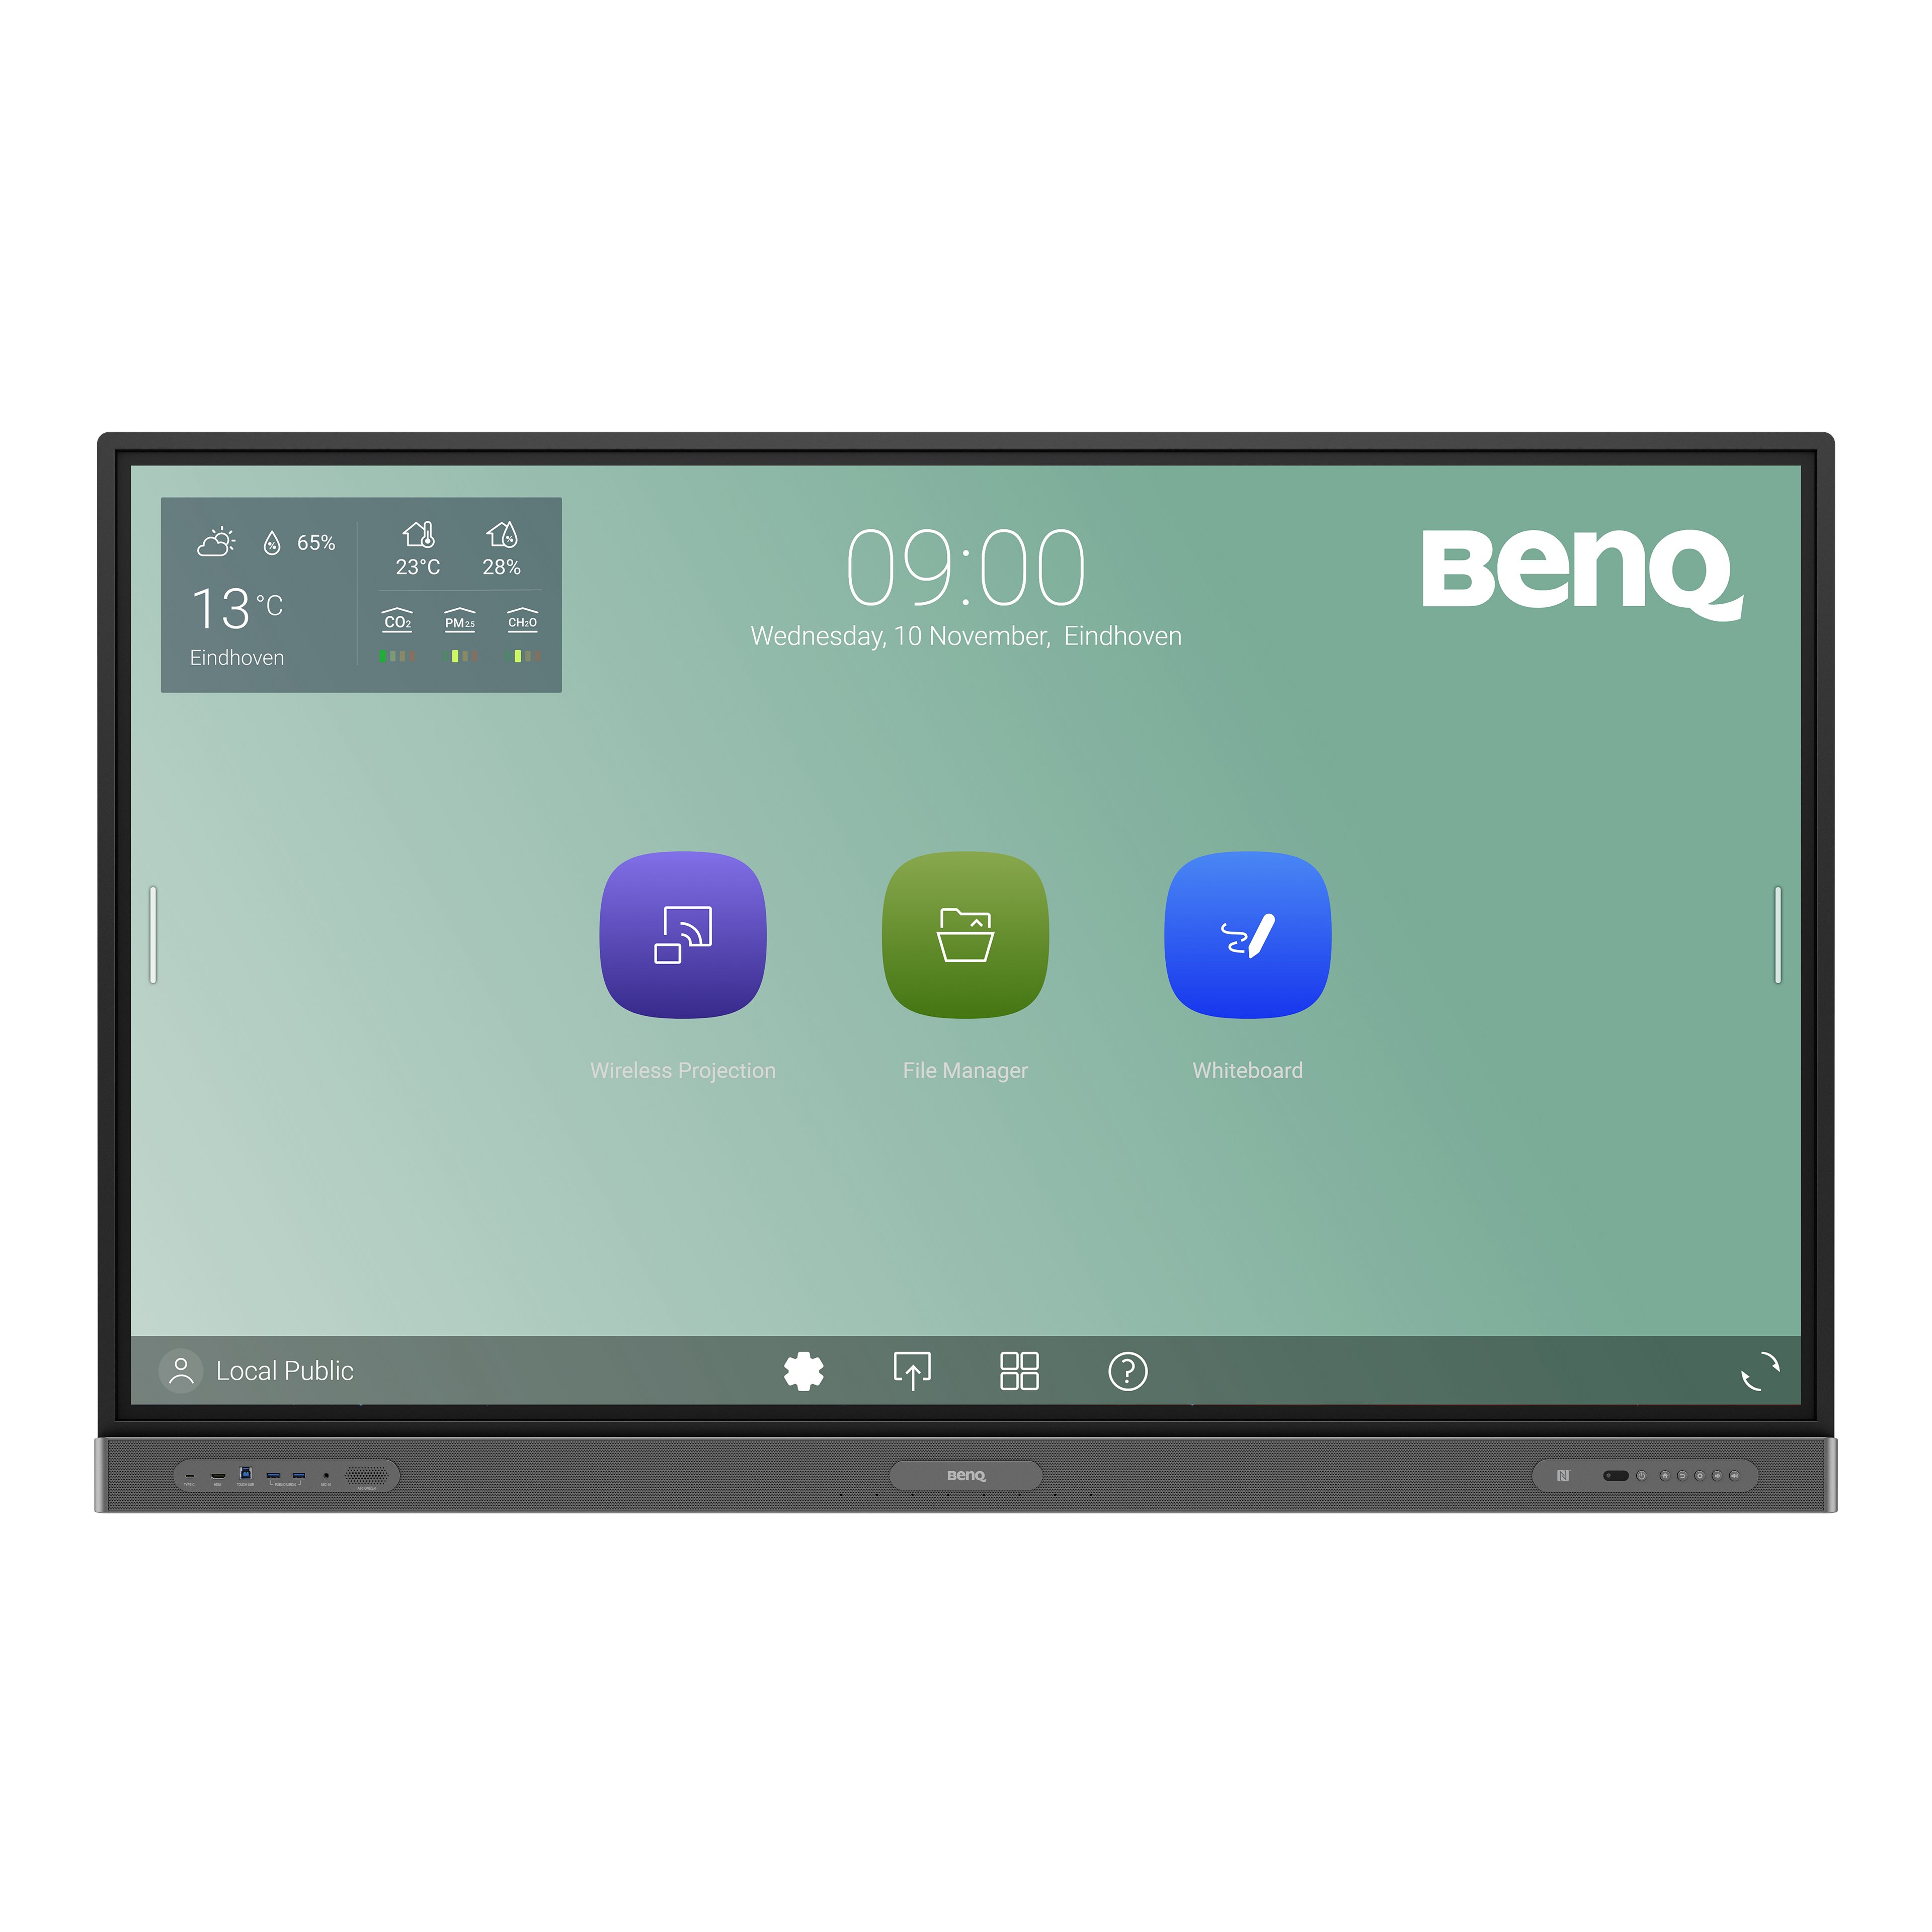 BenQ RP6503 Education Interactive Display mit keimresistentem Bildschirm und Stift, entwickelt für Hybrid- und Remote-Klassenzimmer